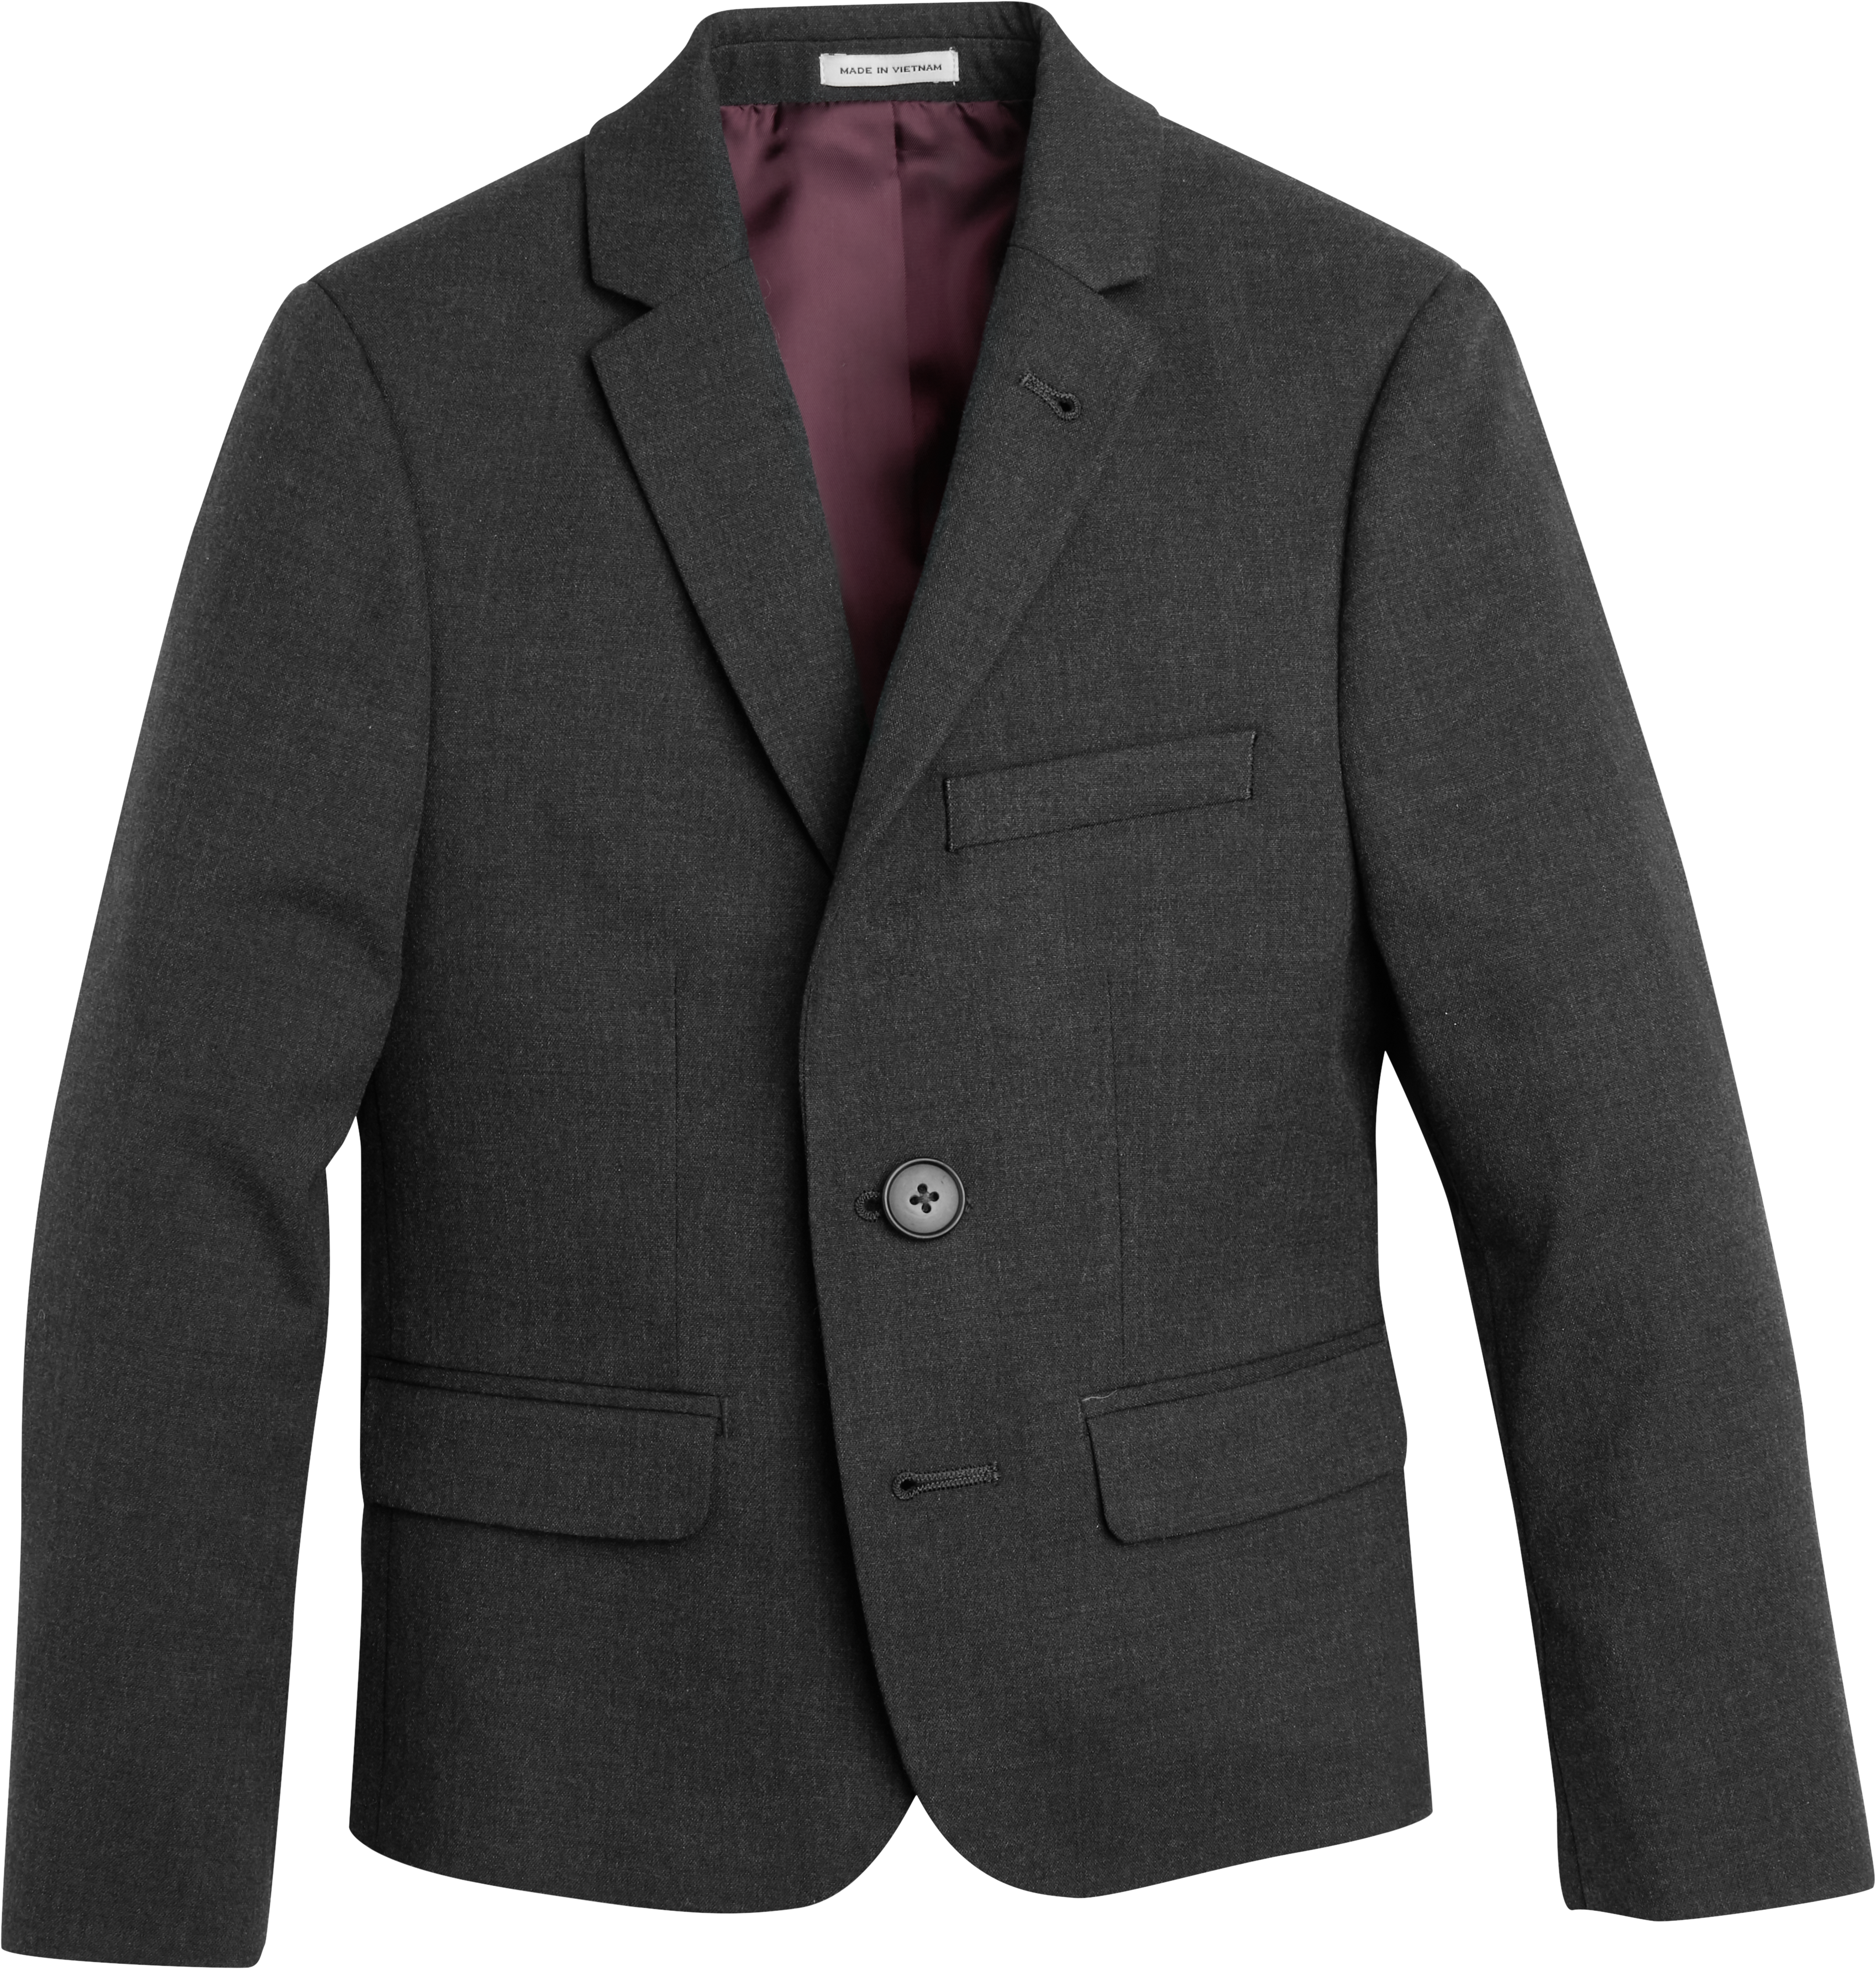 Mens Boys Suits & Tuxedos, Suits - Joseph Abboud Boys Suit Separates Jacket, Charcoal - Men's Wearhouse